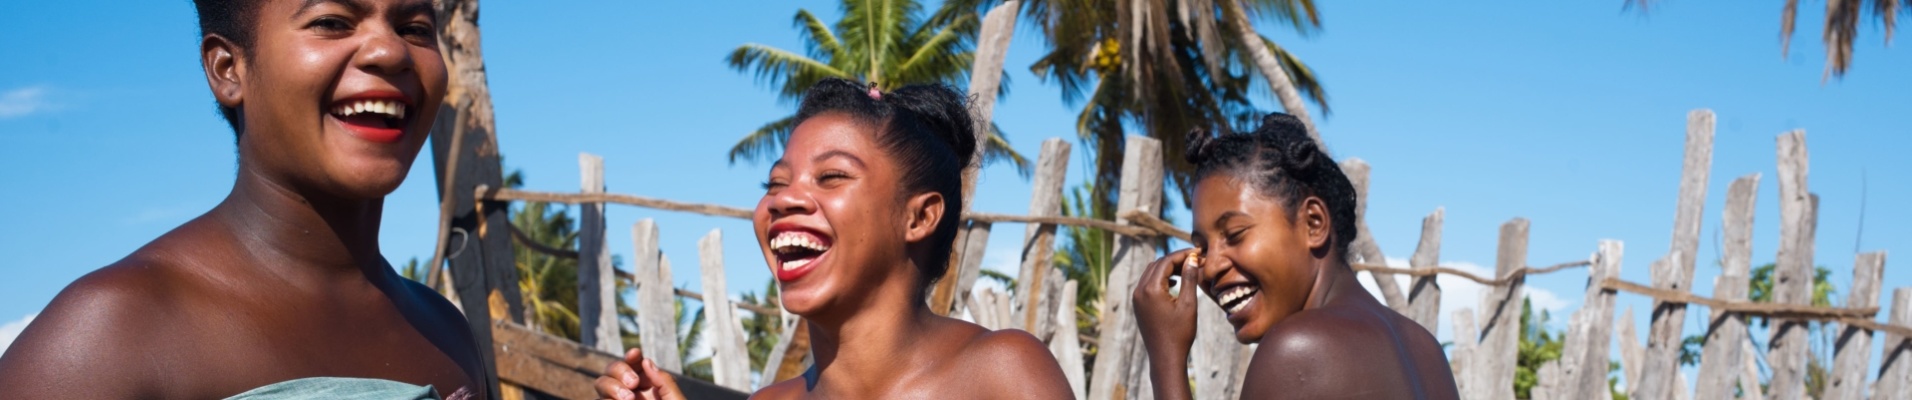 femmes-malgaches-sourire